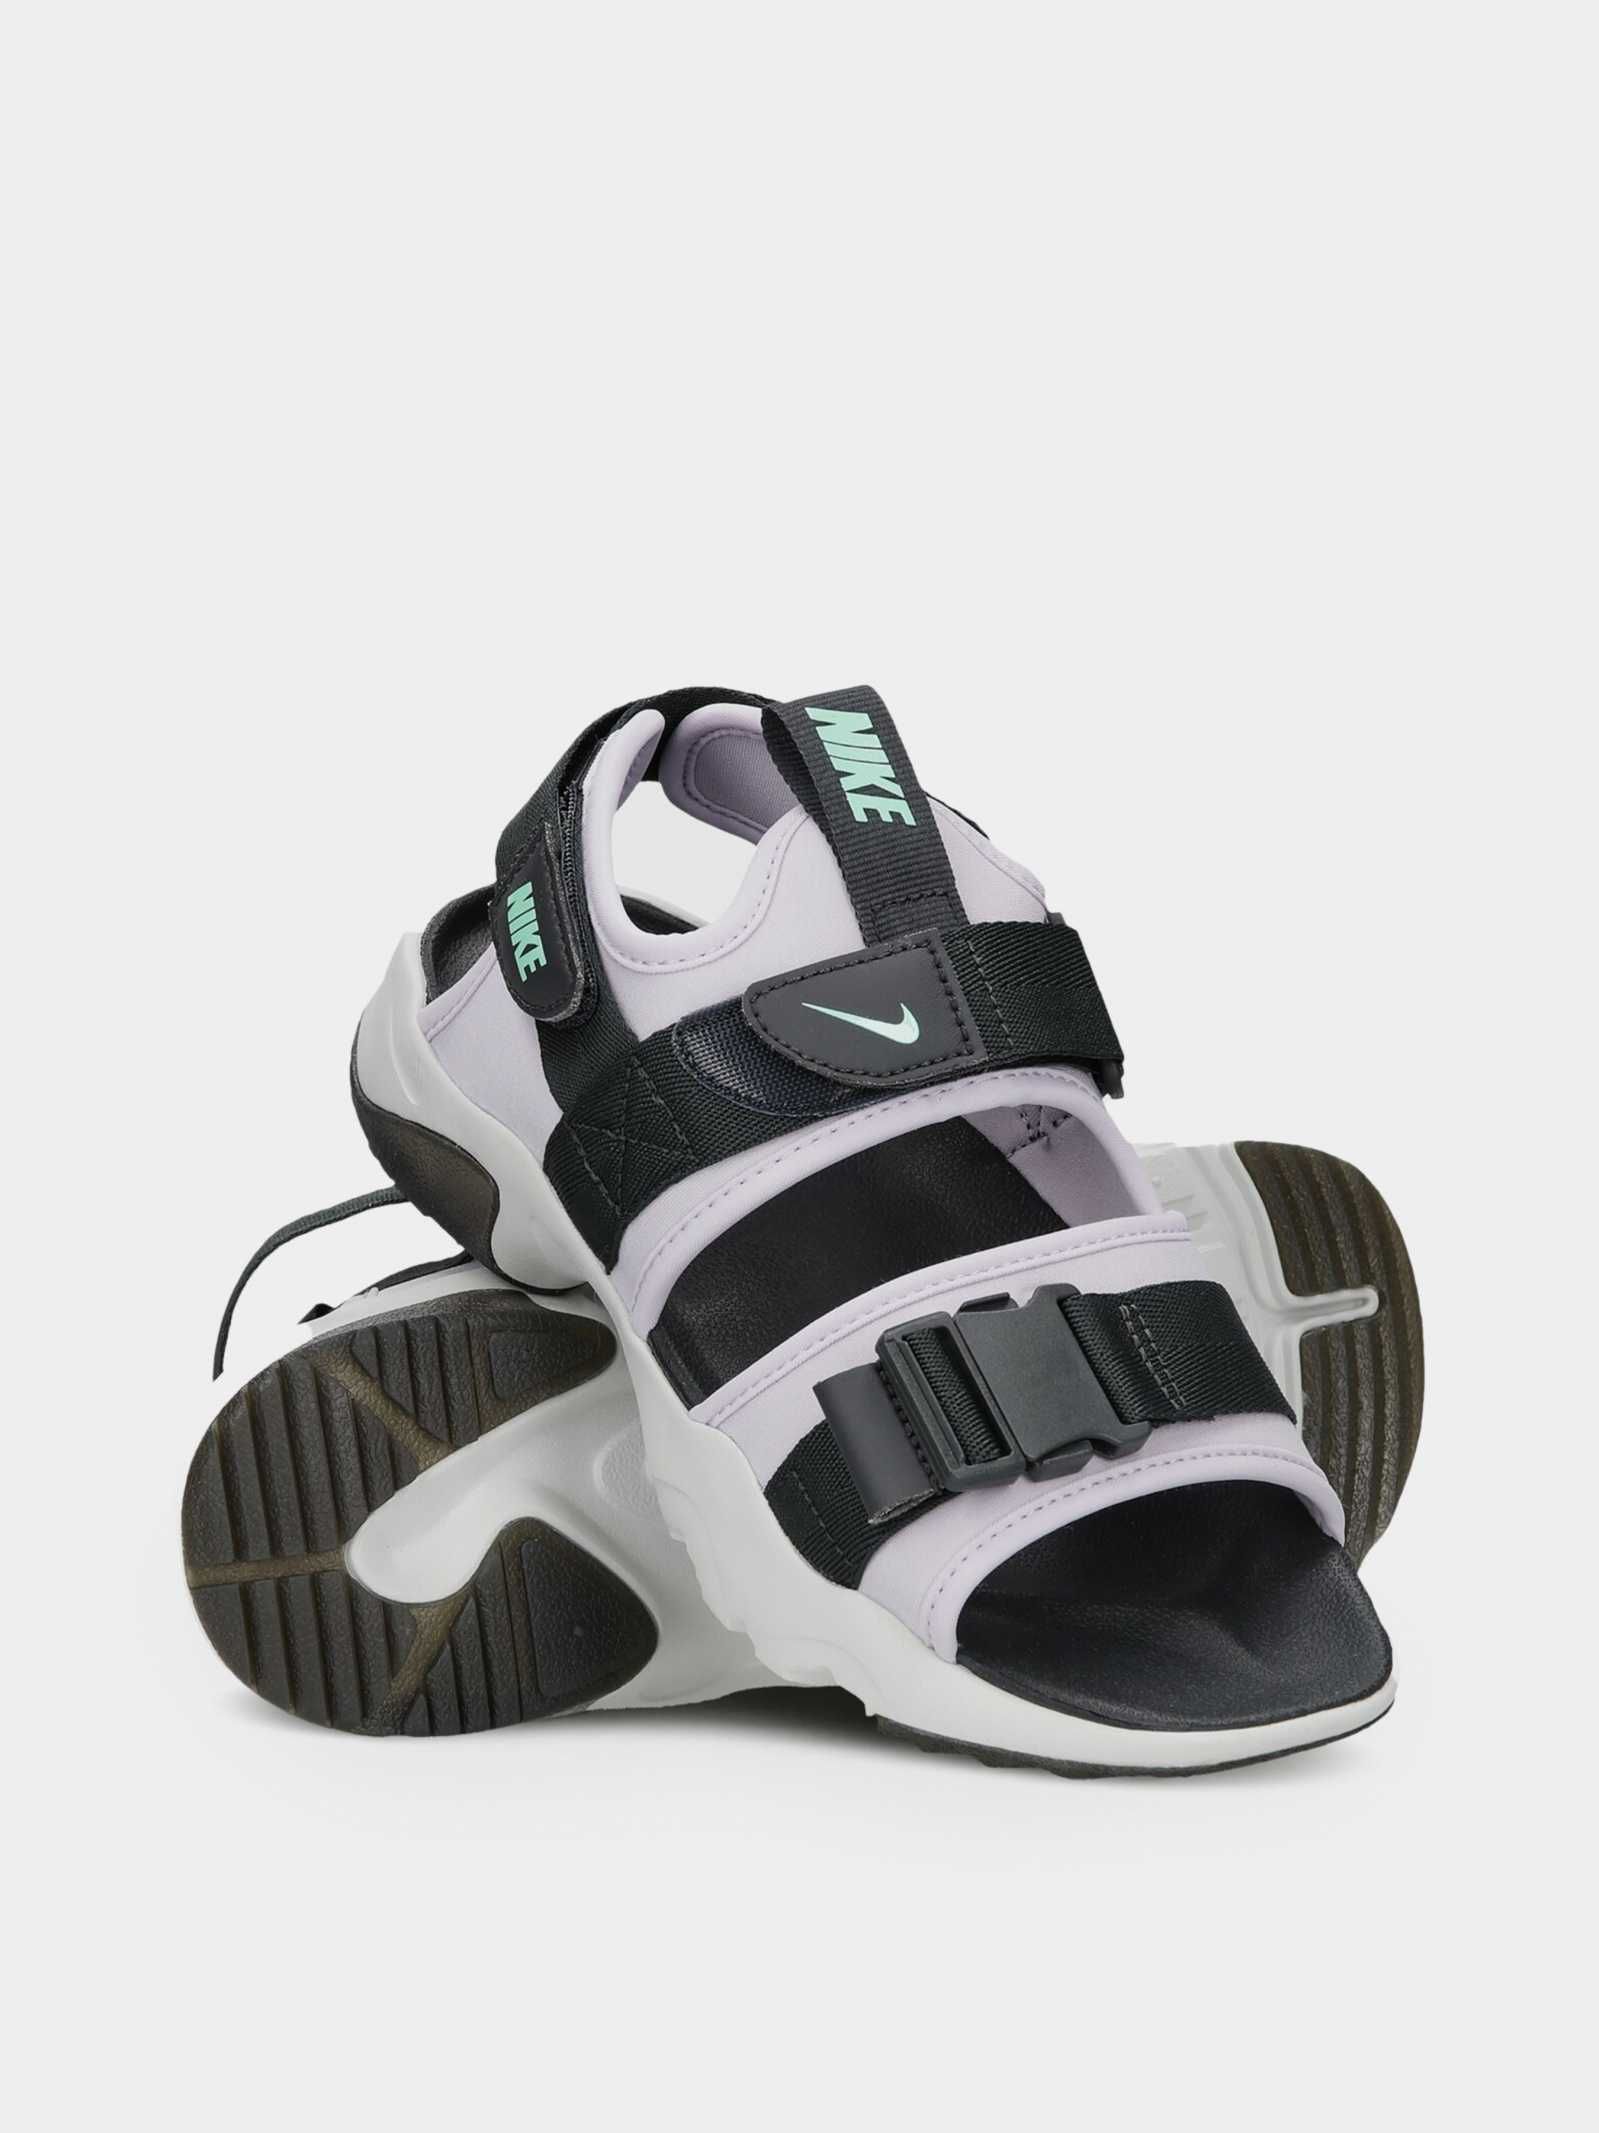 Nike wmns canyon sandals/ Дамски сандали Найк №38 /24см.